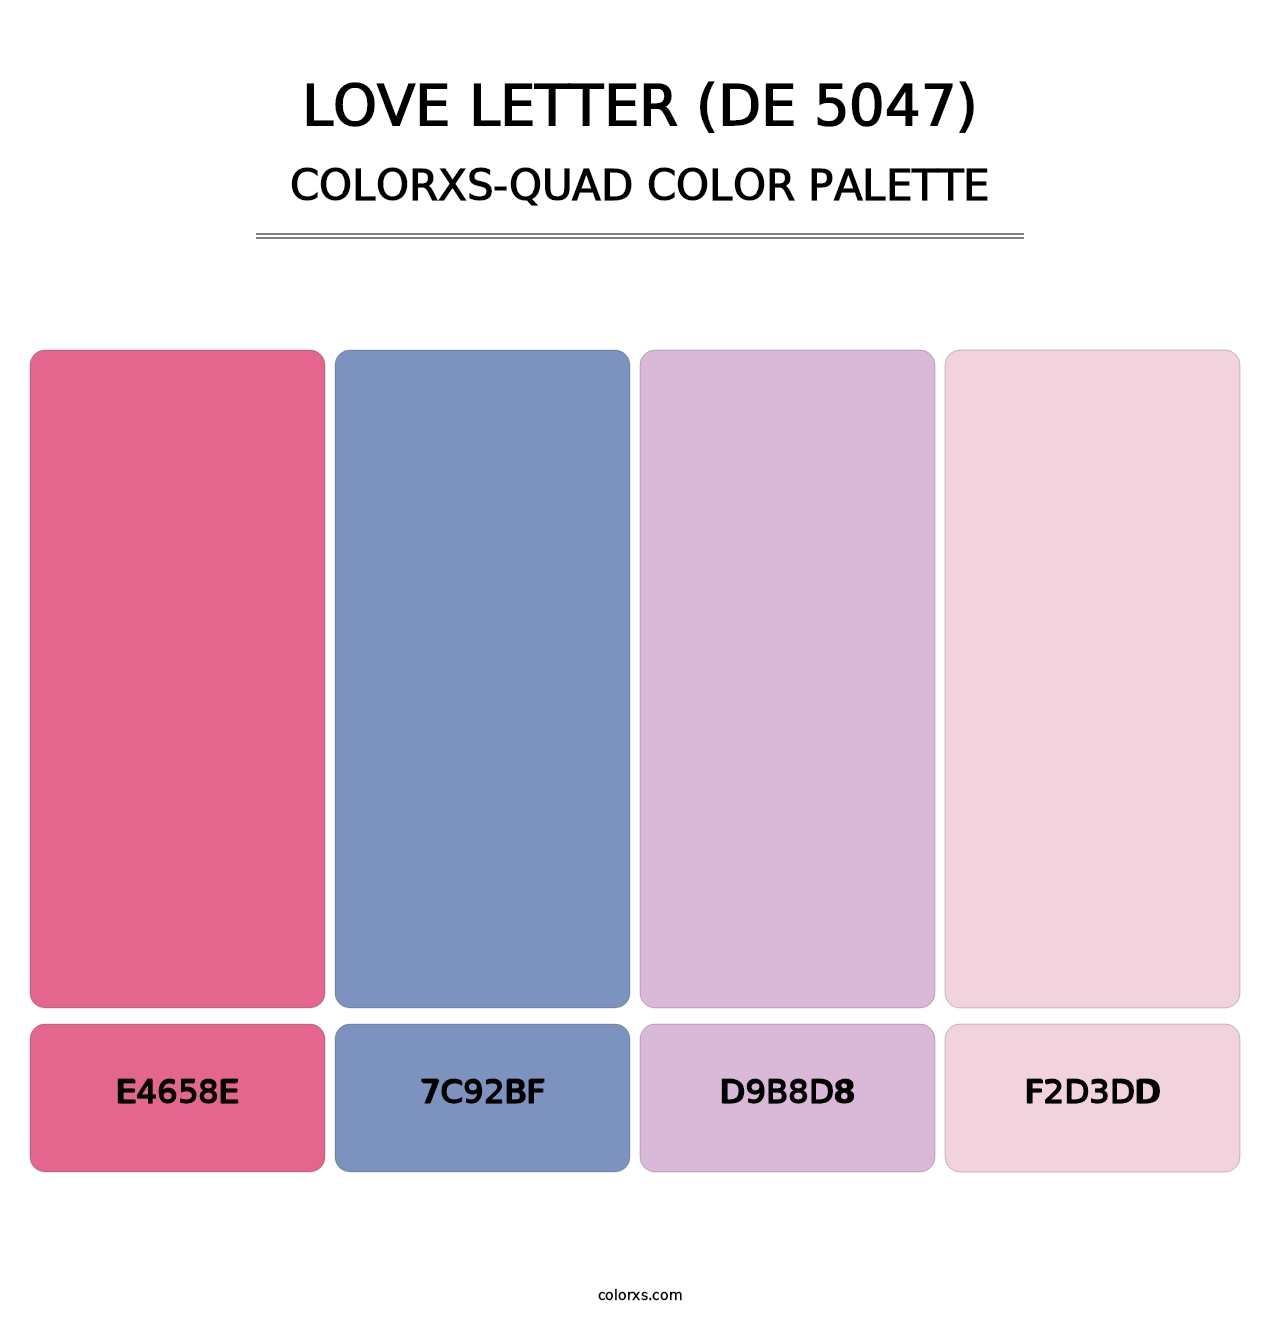 Love Letter (DE 5047) - Colorxs Quad Palette